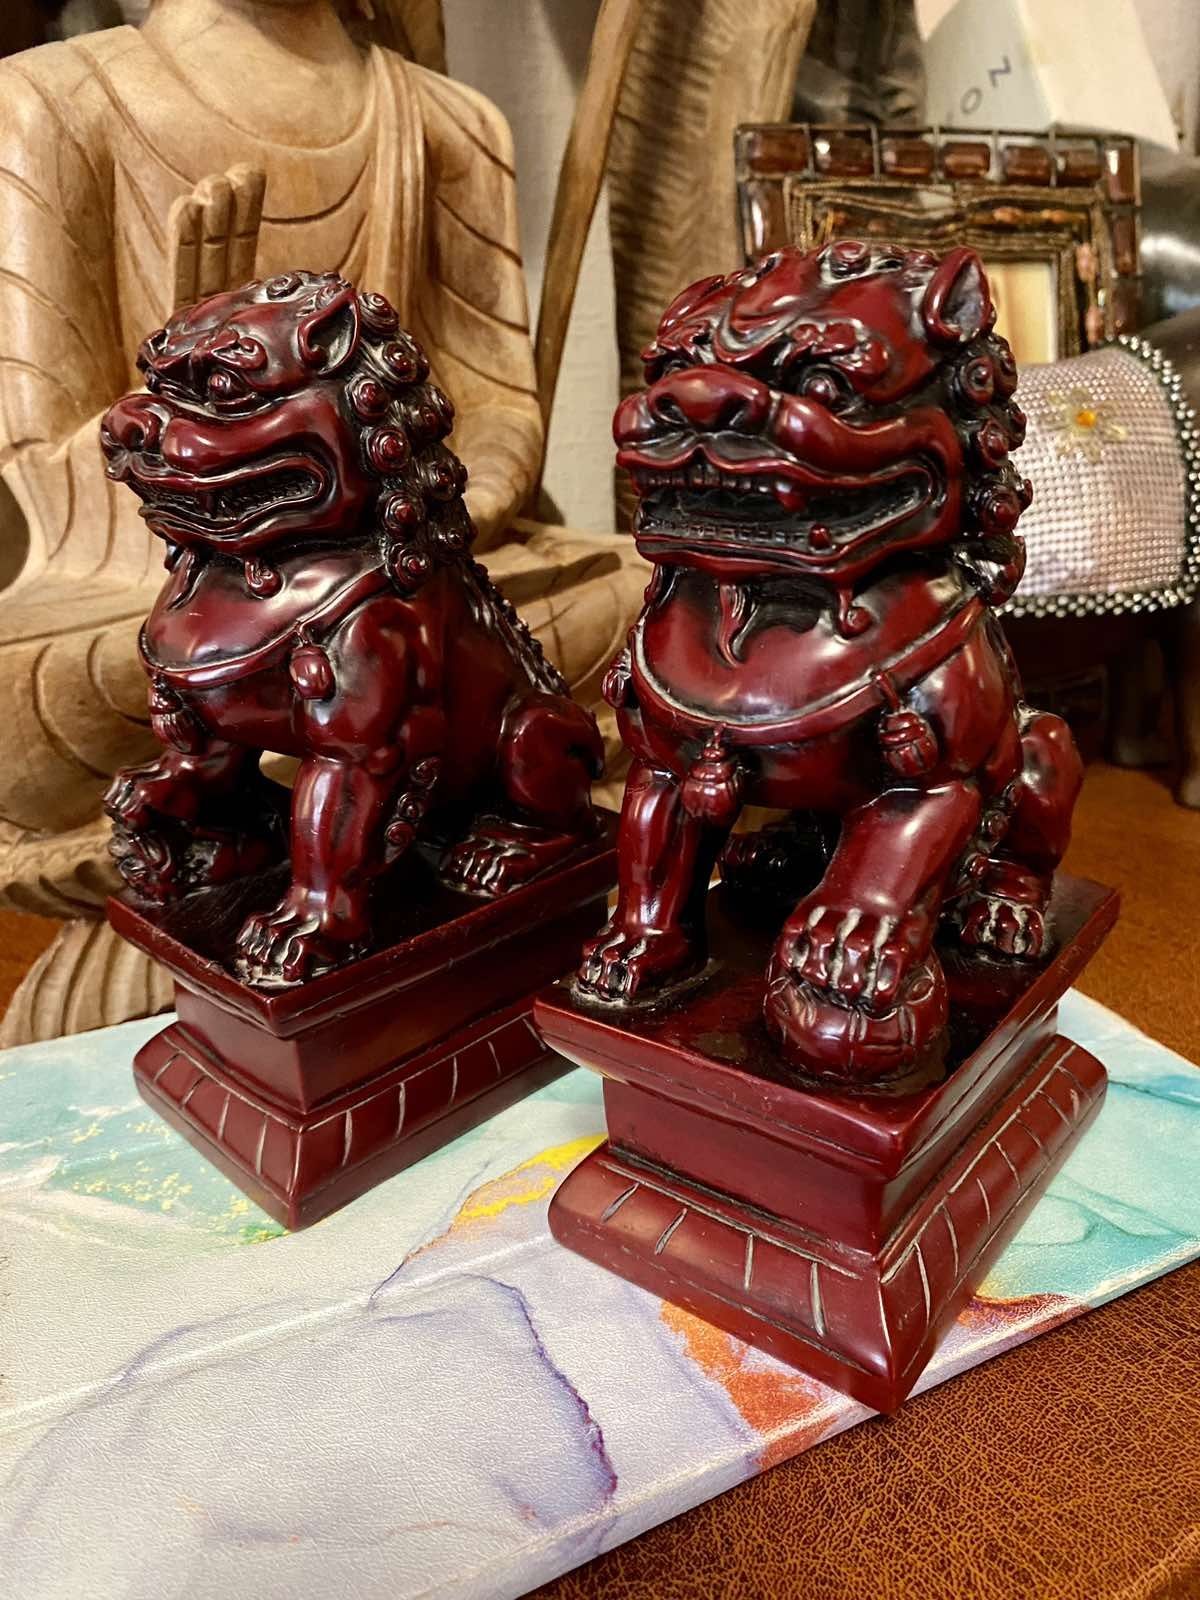 Китайская статуэтка, фигурка, собаколев, лев Фу, страж, оберег